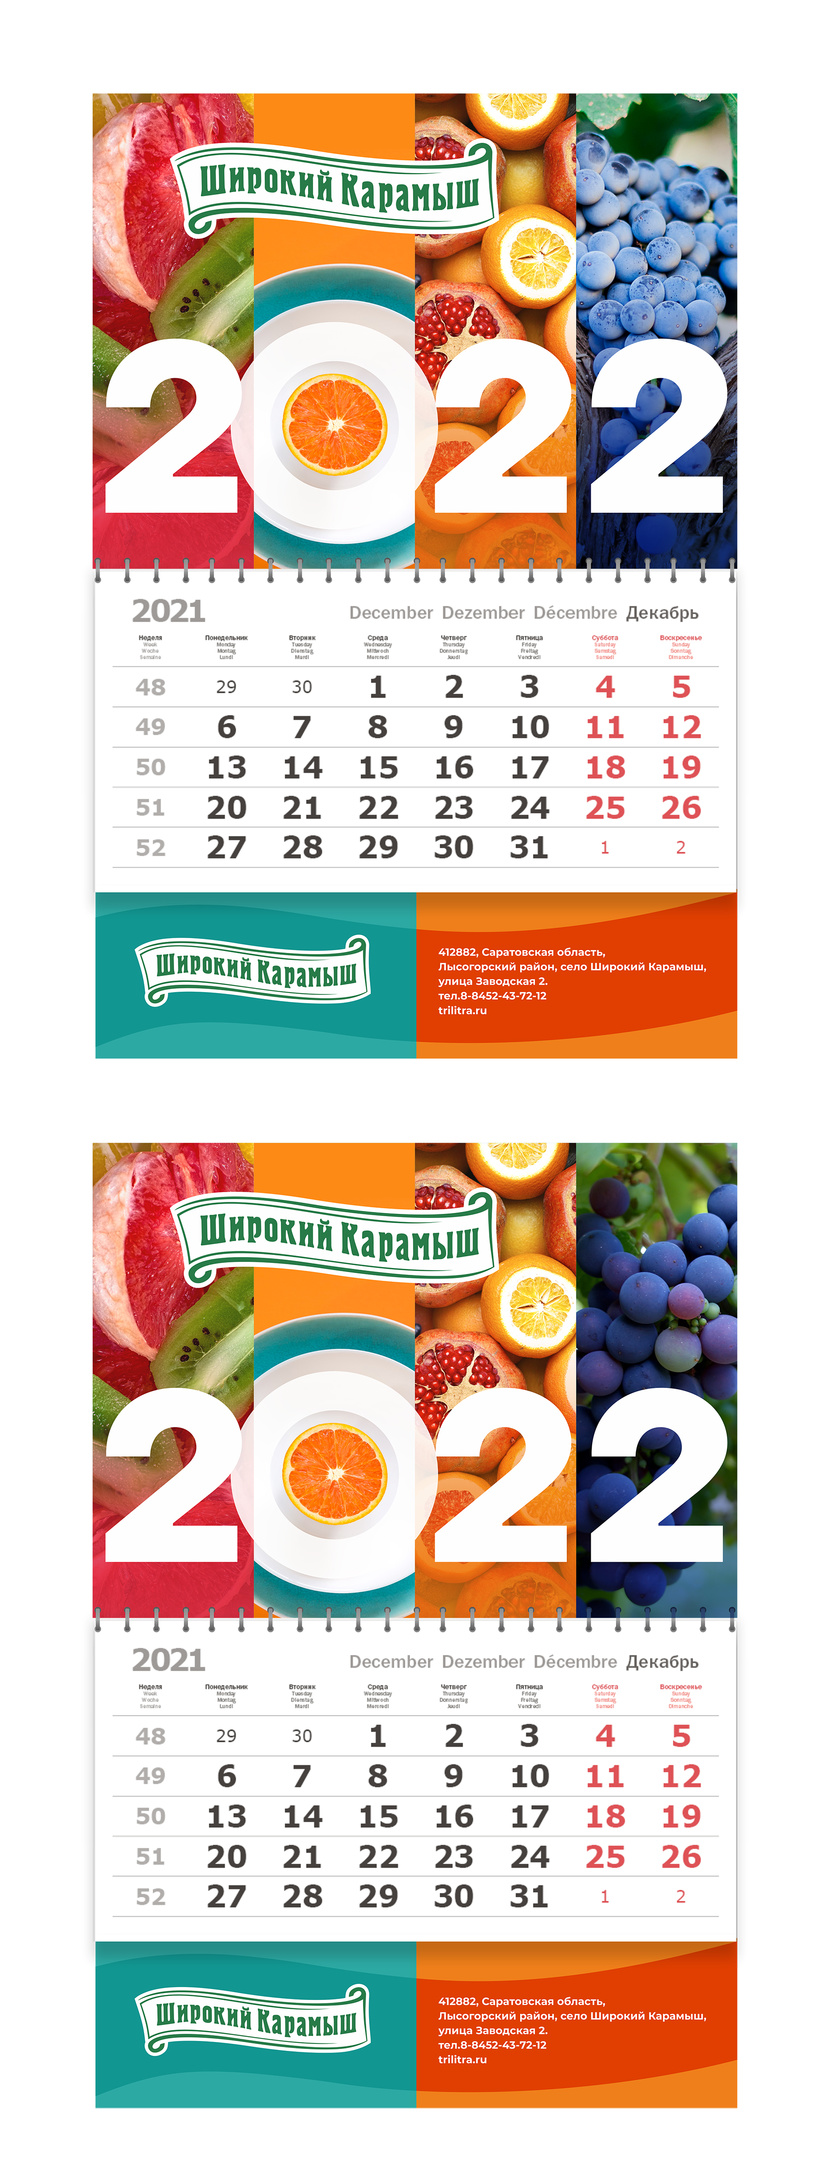 Дизайн квартального календаря 2022г. для "Широкий Карамыш"  -  автор Ирина Васильева